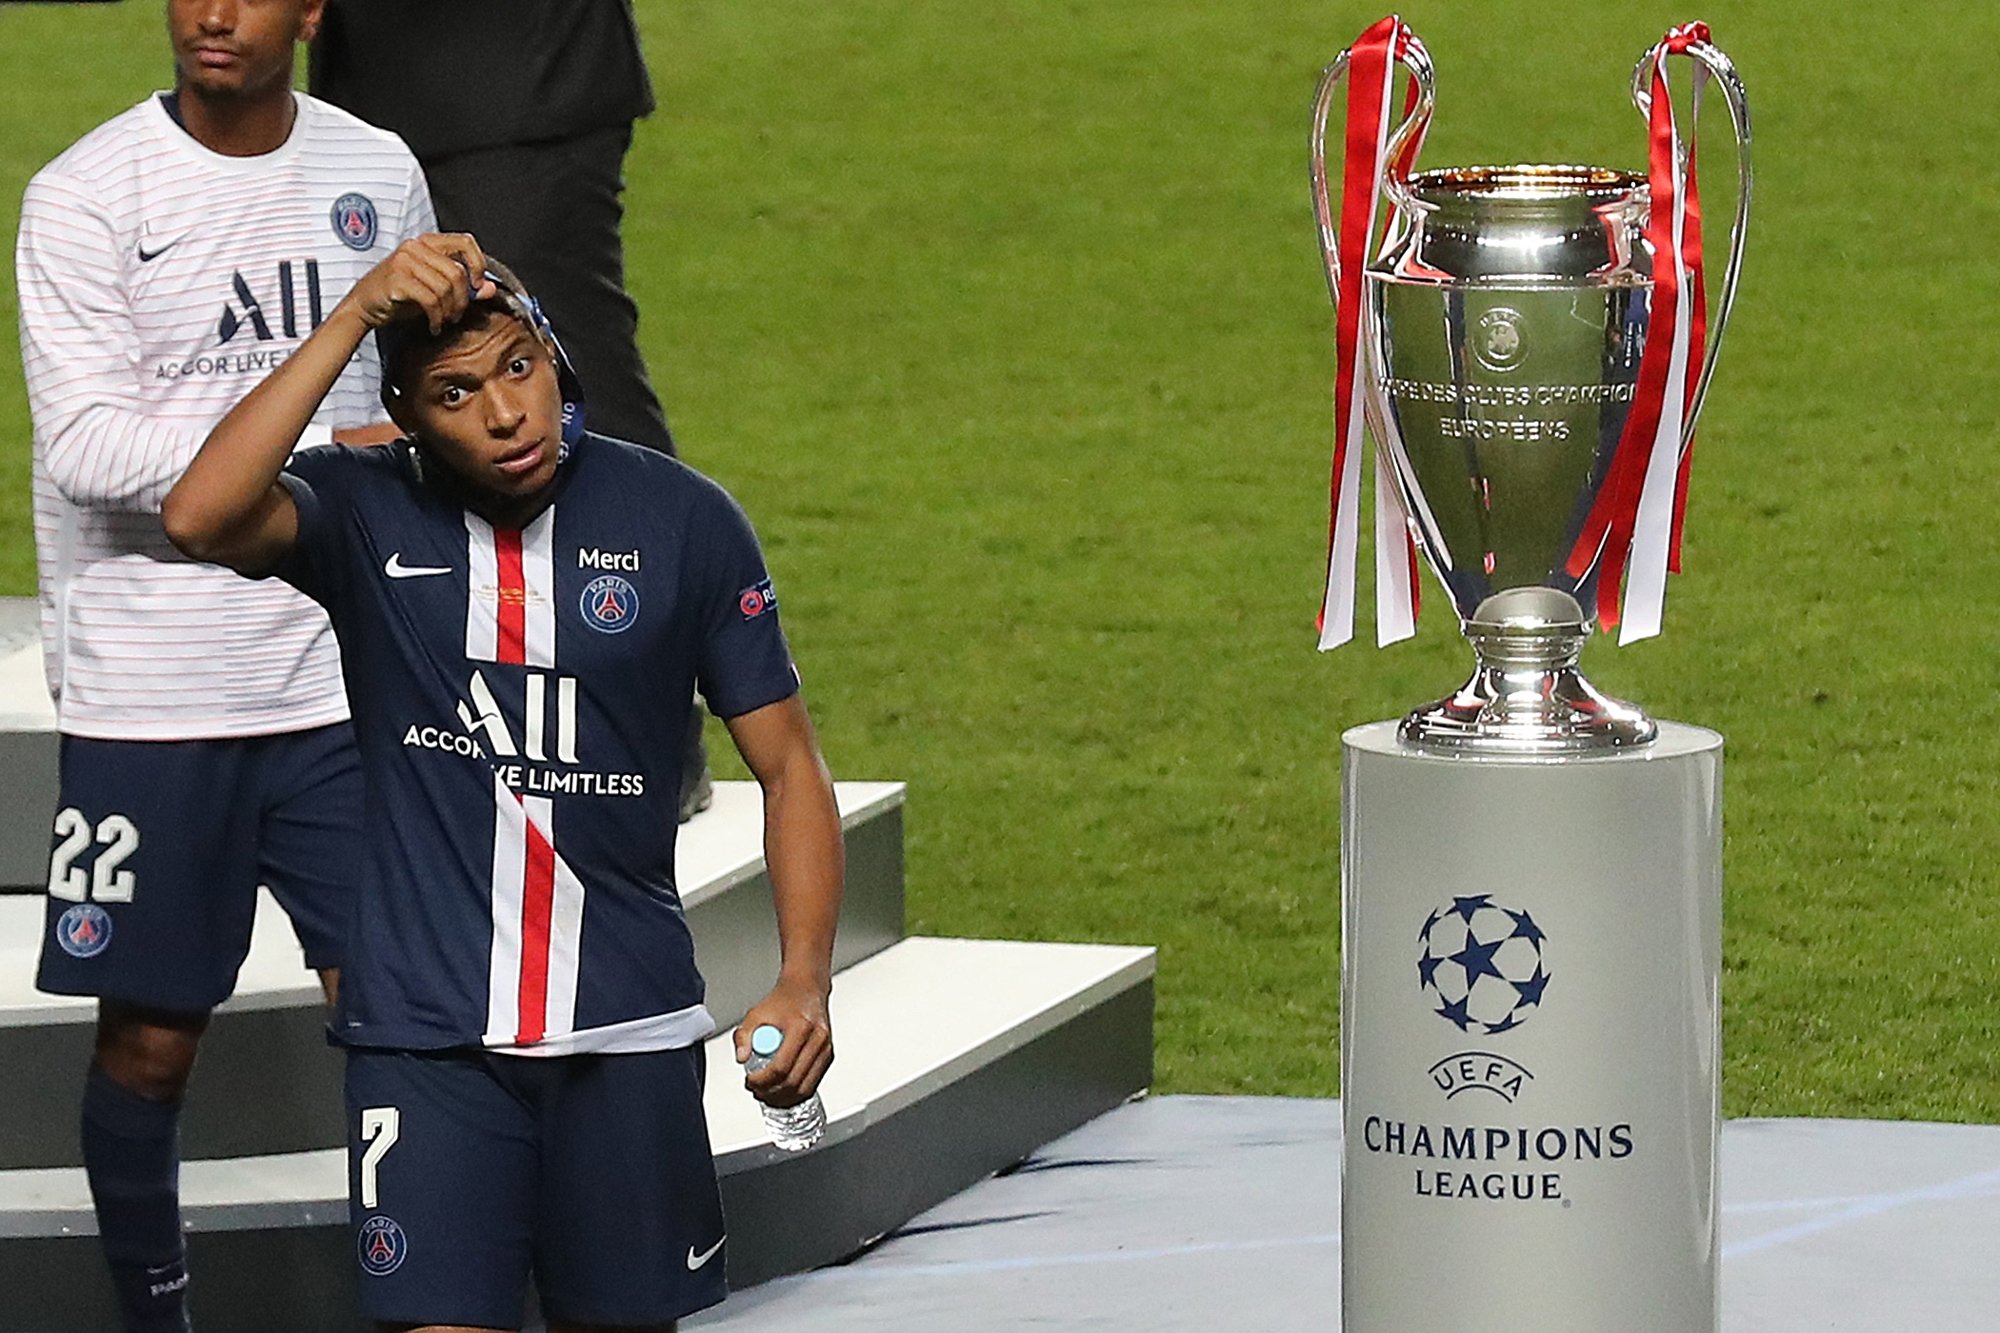 Dernière minute, le PSG aurait revu ses objectifs pour la Ligue des Champions